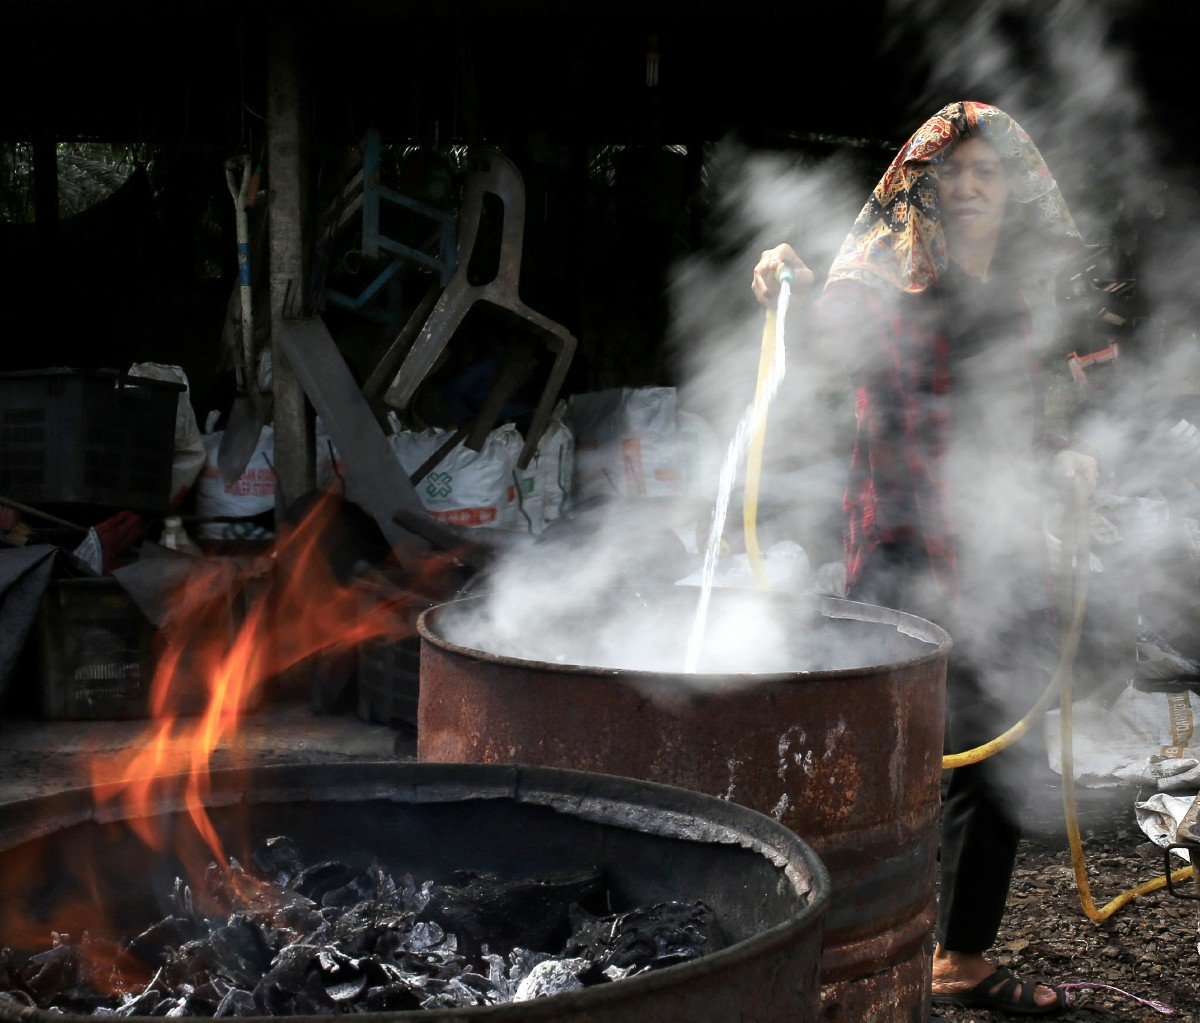 PROSES pemadaman api pada kelapa yang dibakar di dalam tong untuk dijadikan arang.